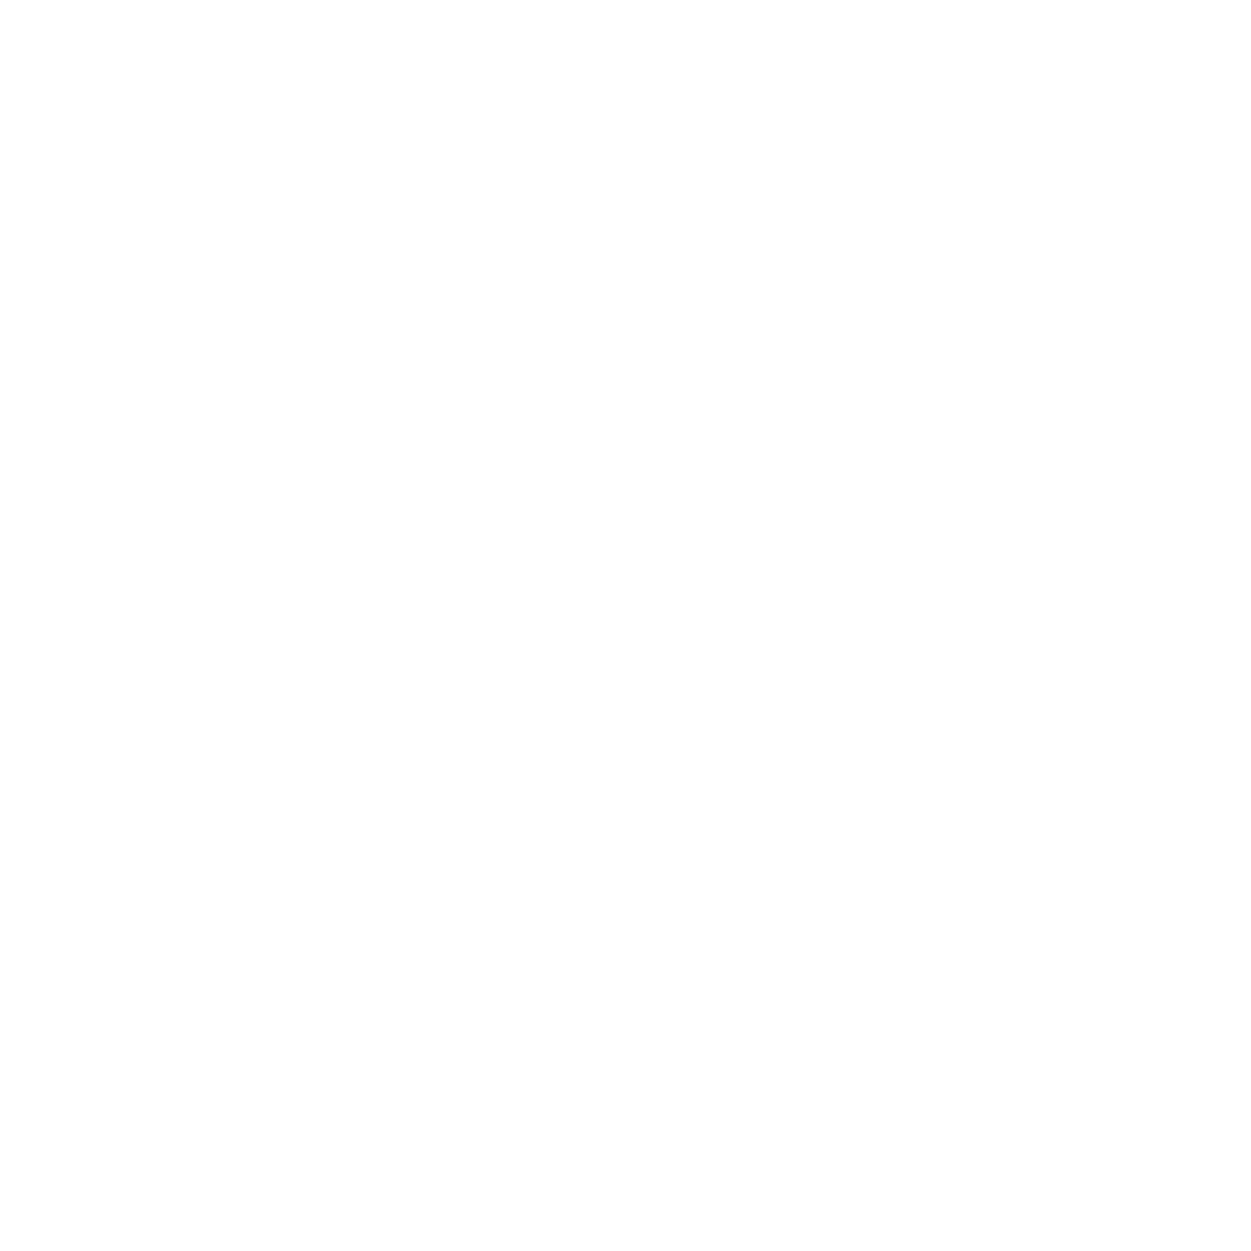 Orbis Terra Media – Grow With Content